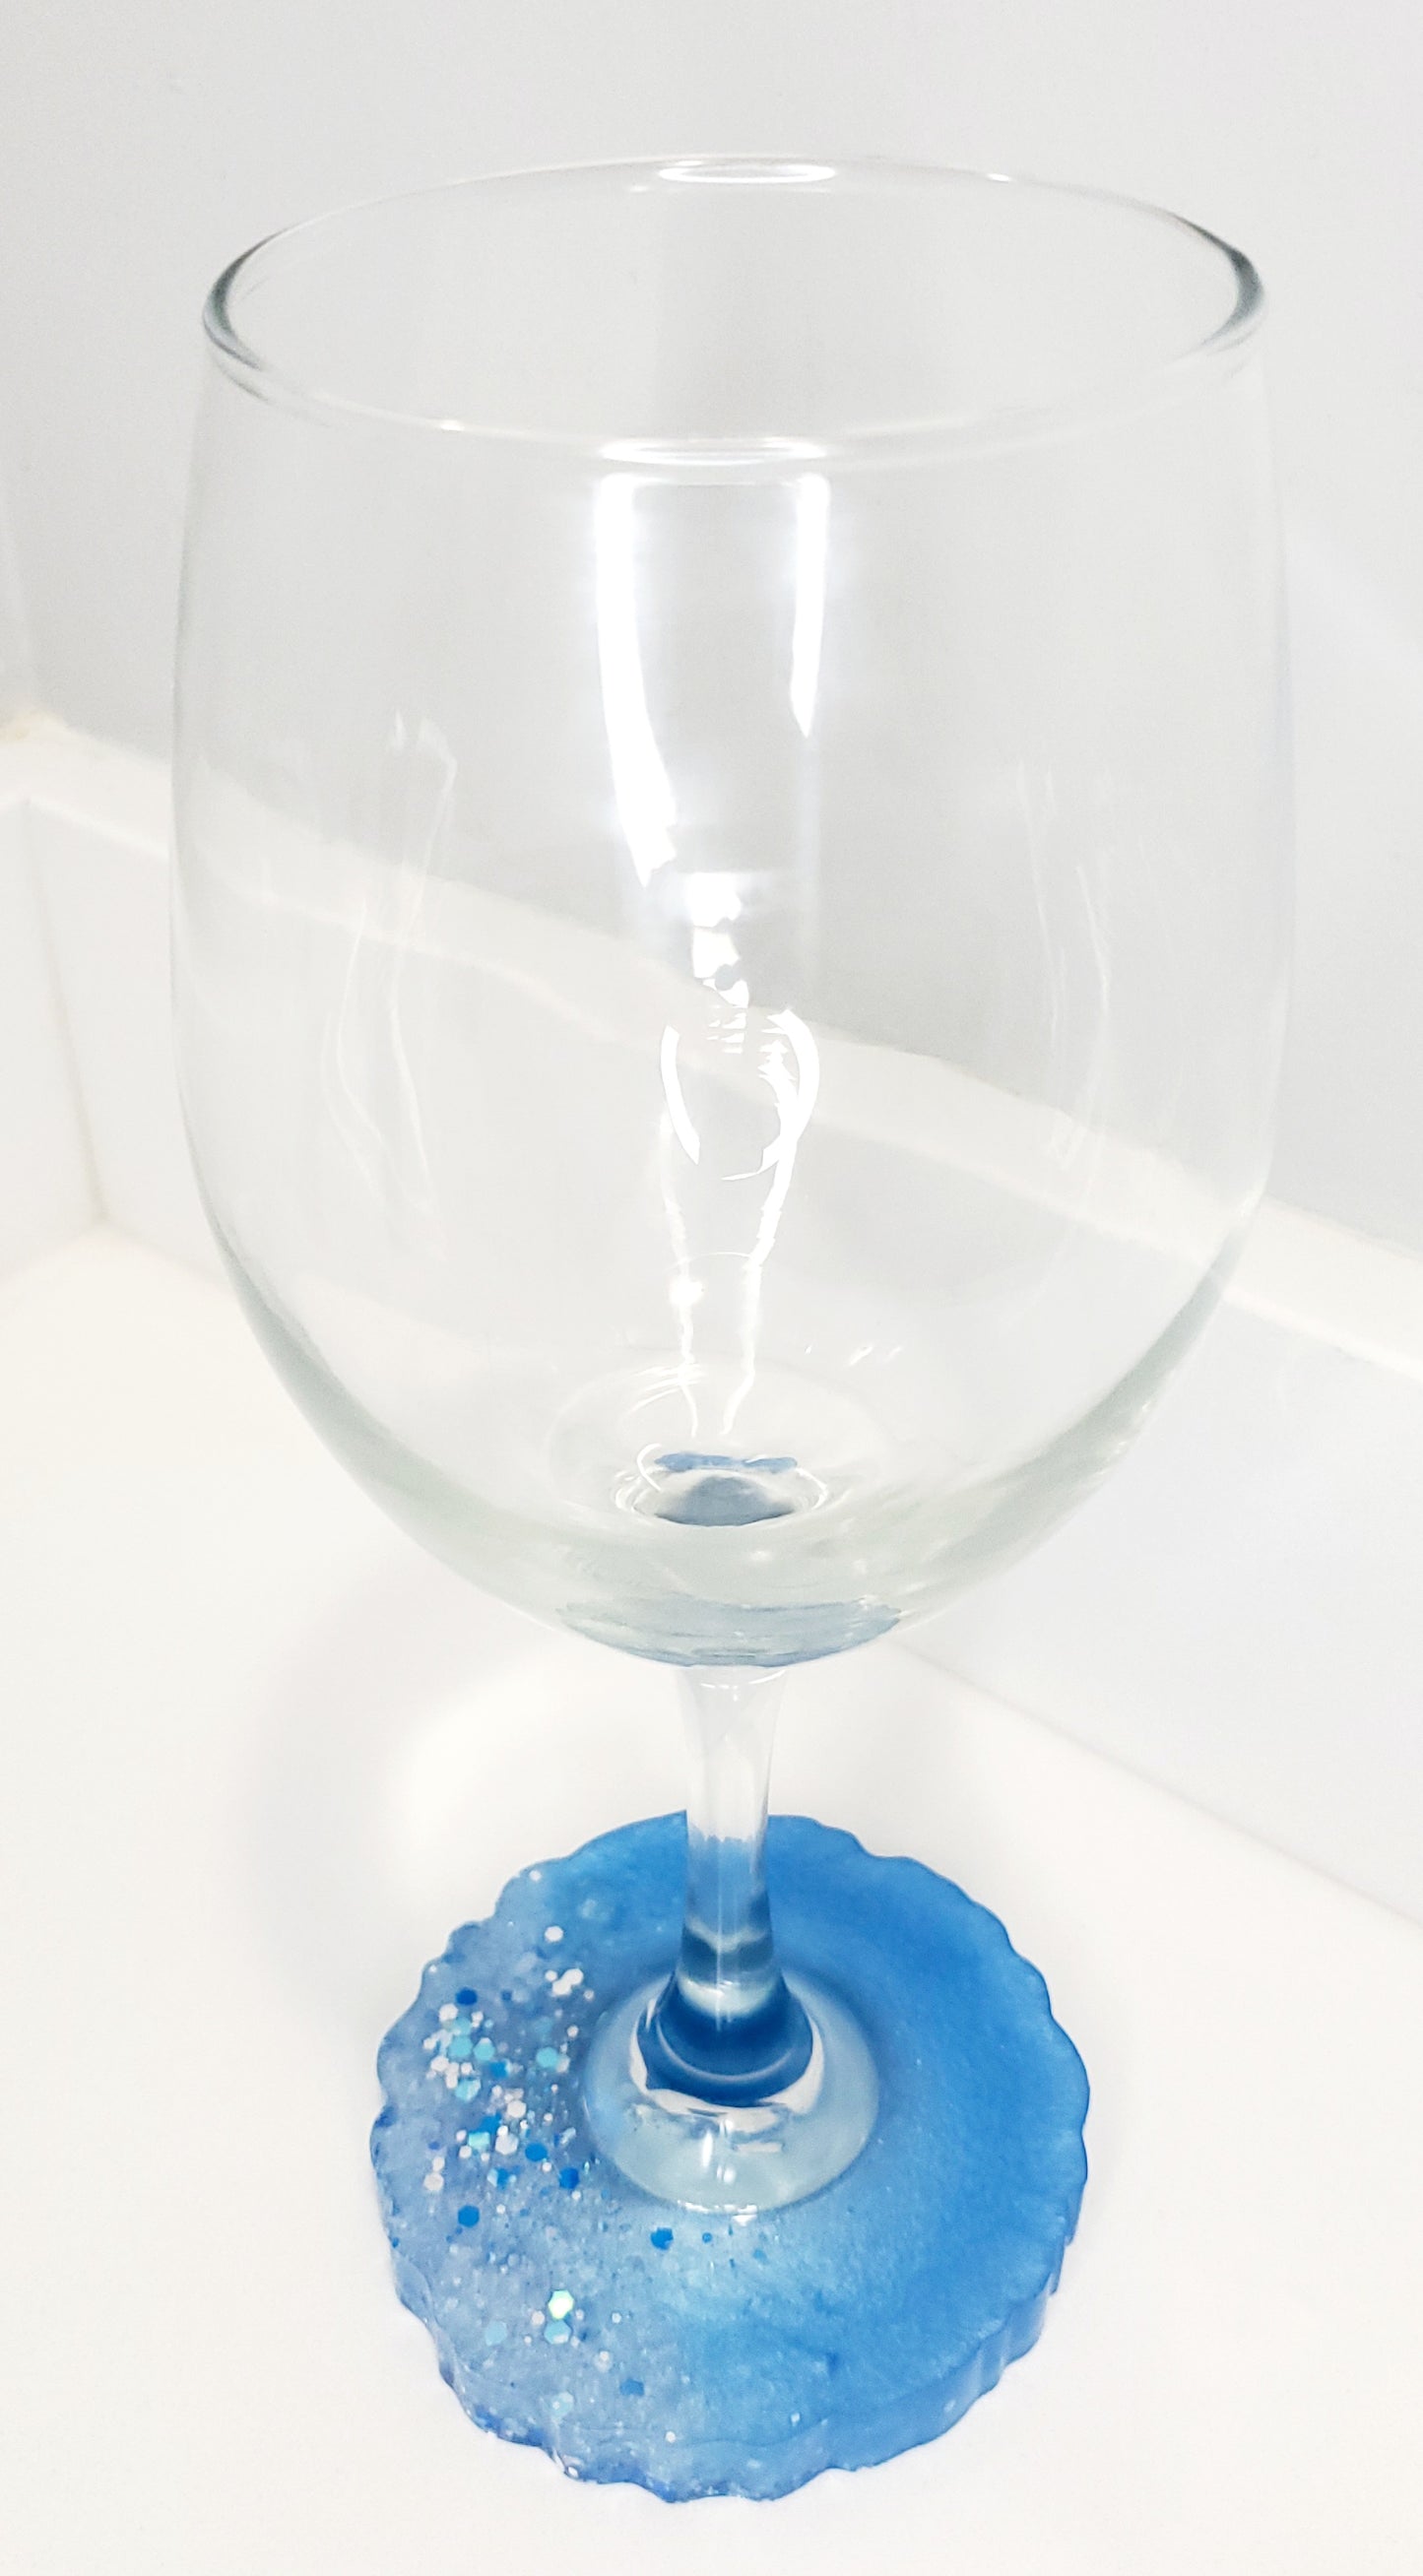 Resin based (coaster) wine glass - Light blue/glitter